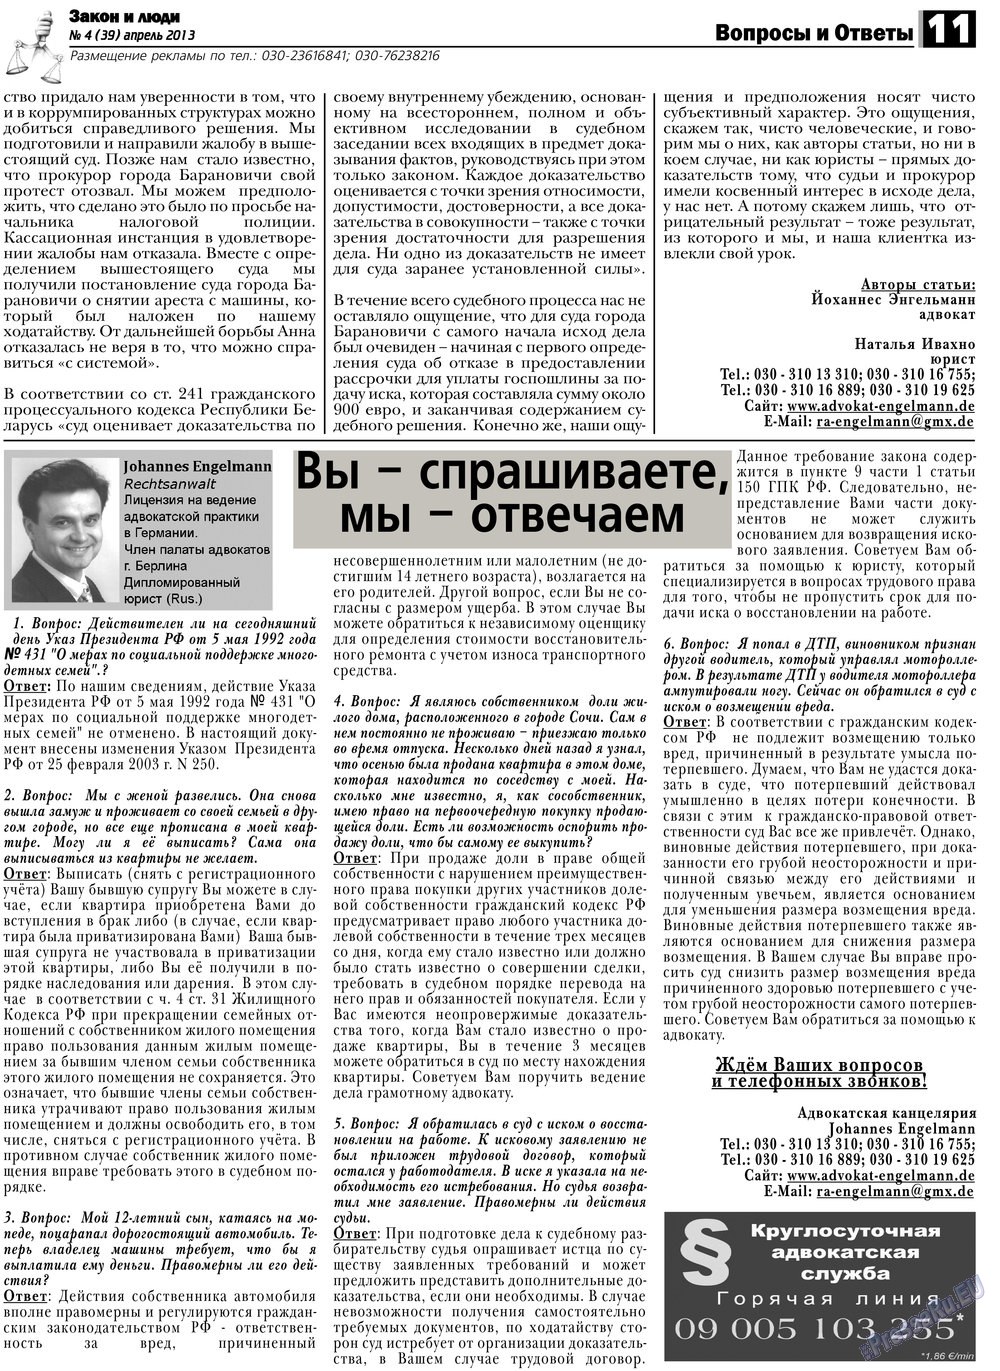 Закон и люди (газета). 2013 год, номер 4, стр. 11